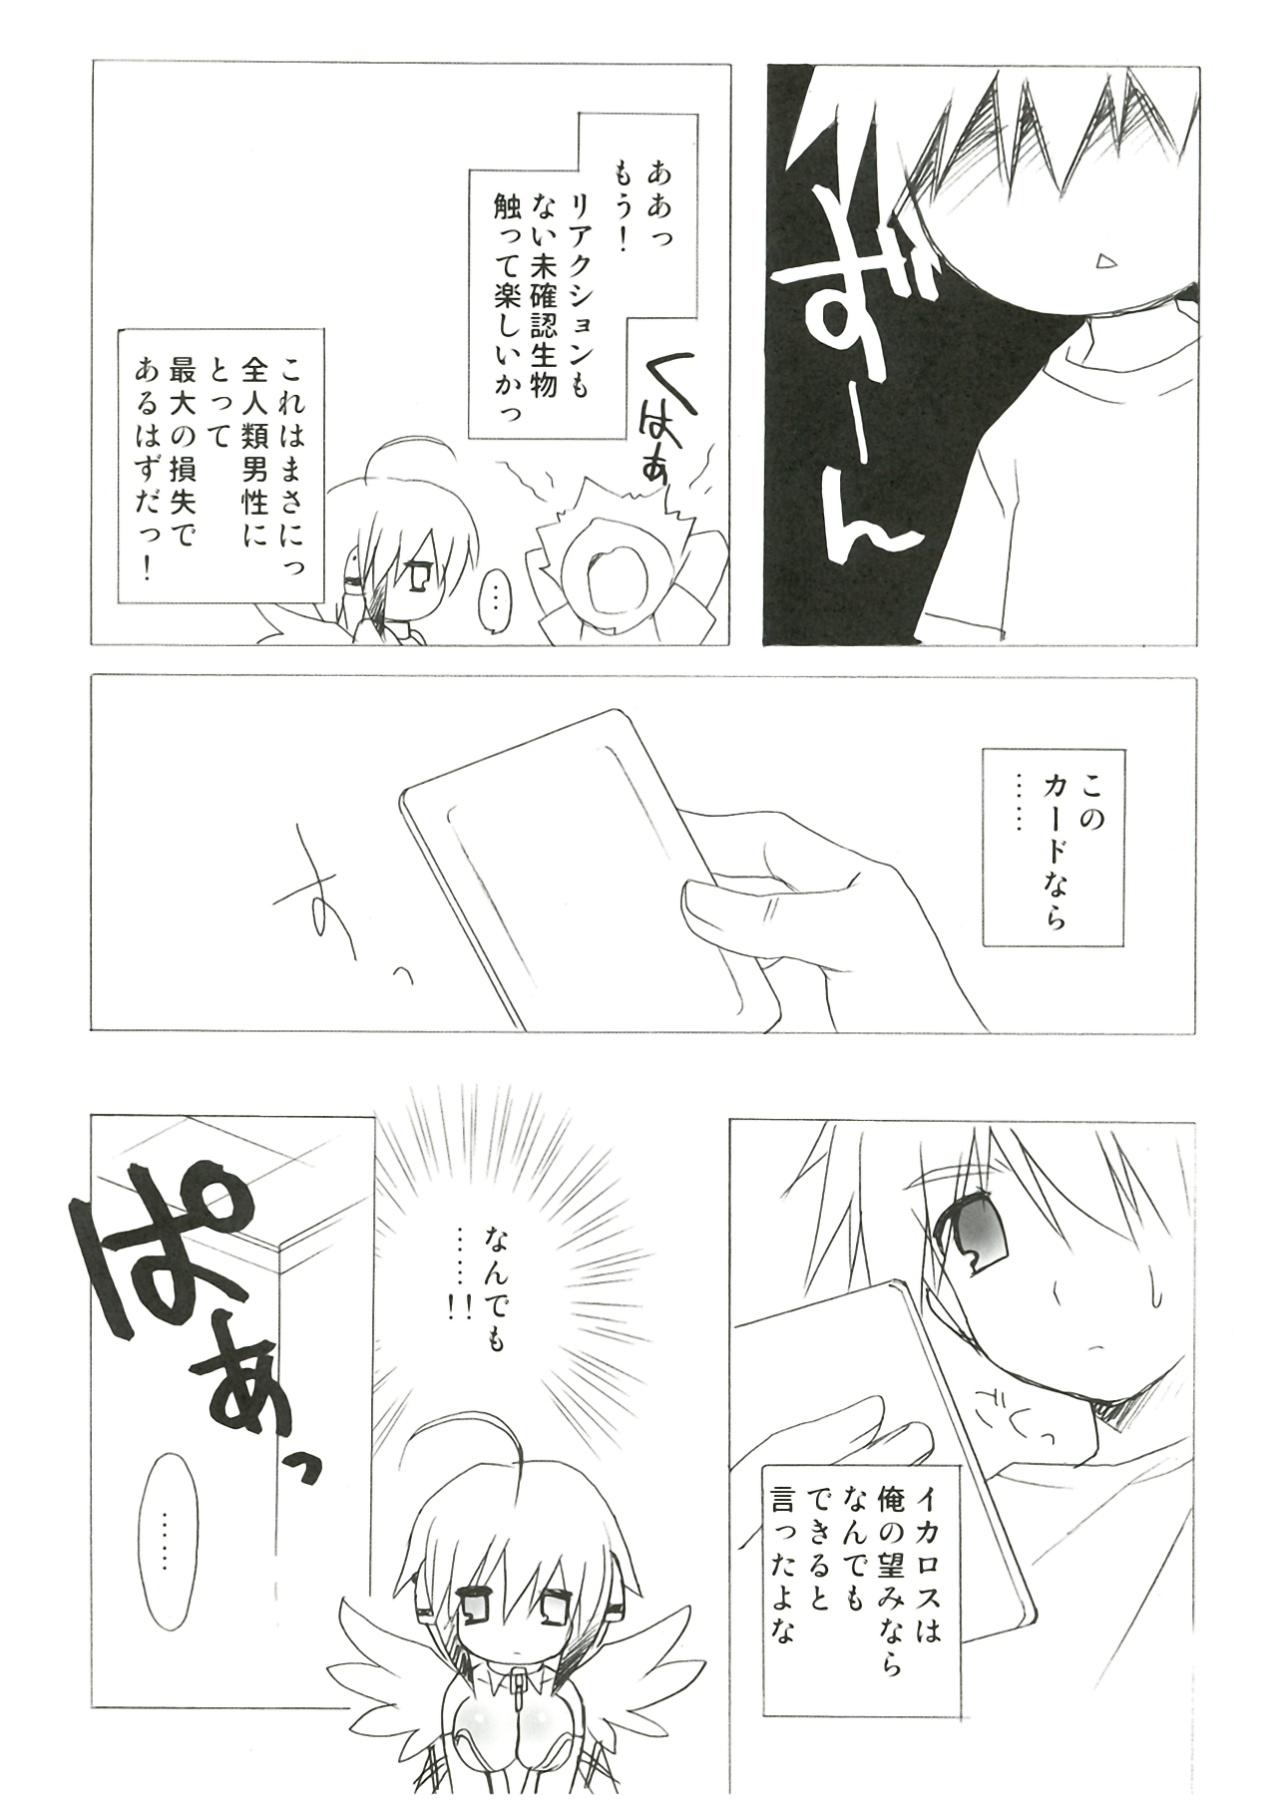 Thick Kokoro no Otoshimono - Sora no otoshimono Tan - Page 10